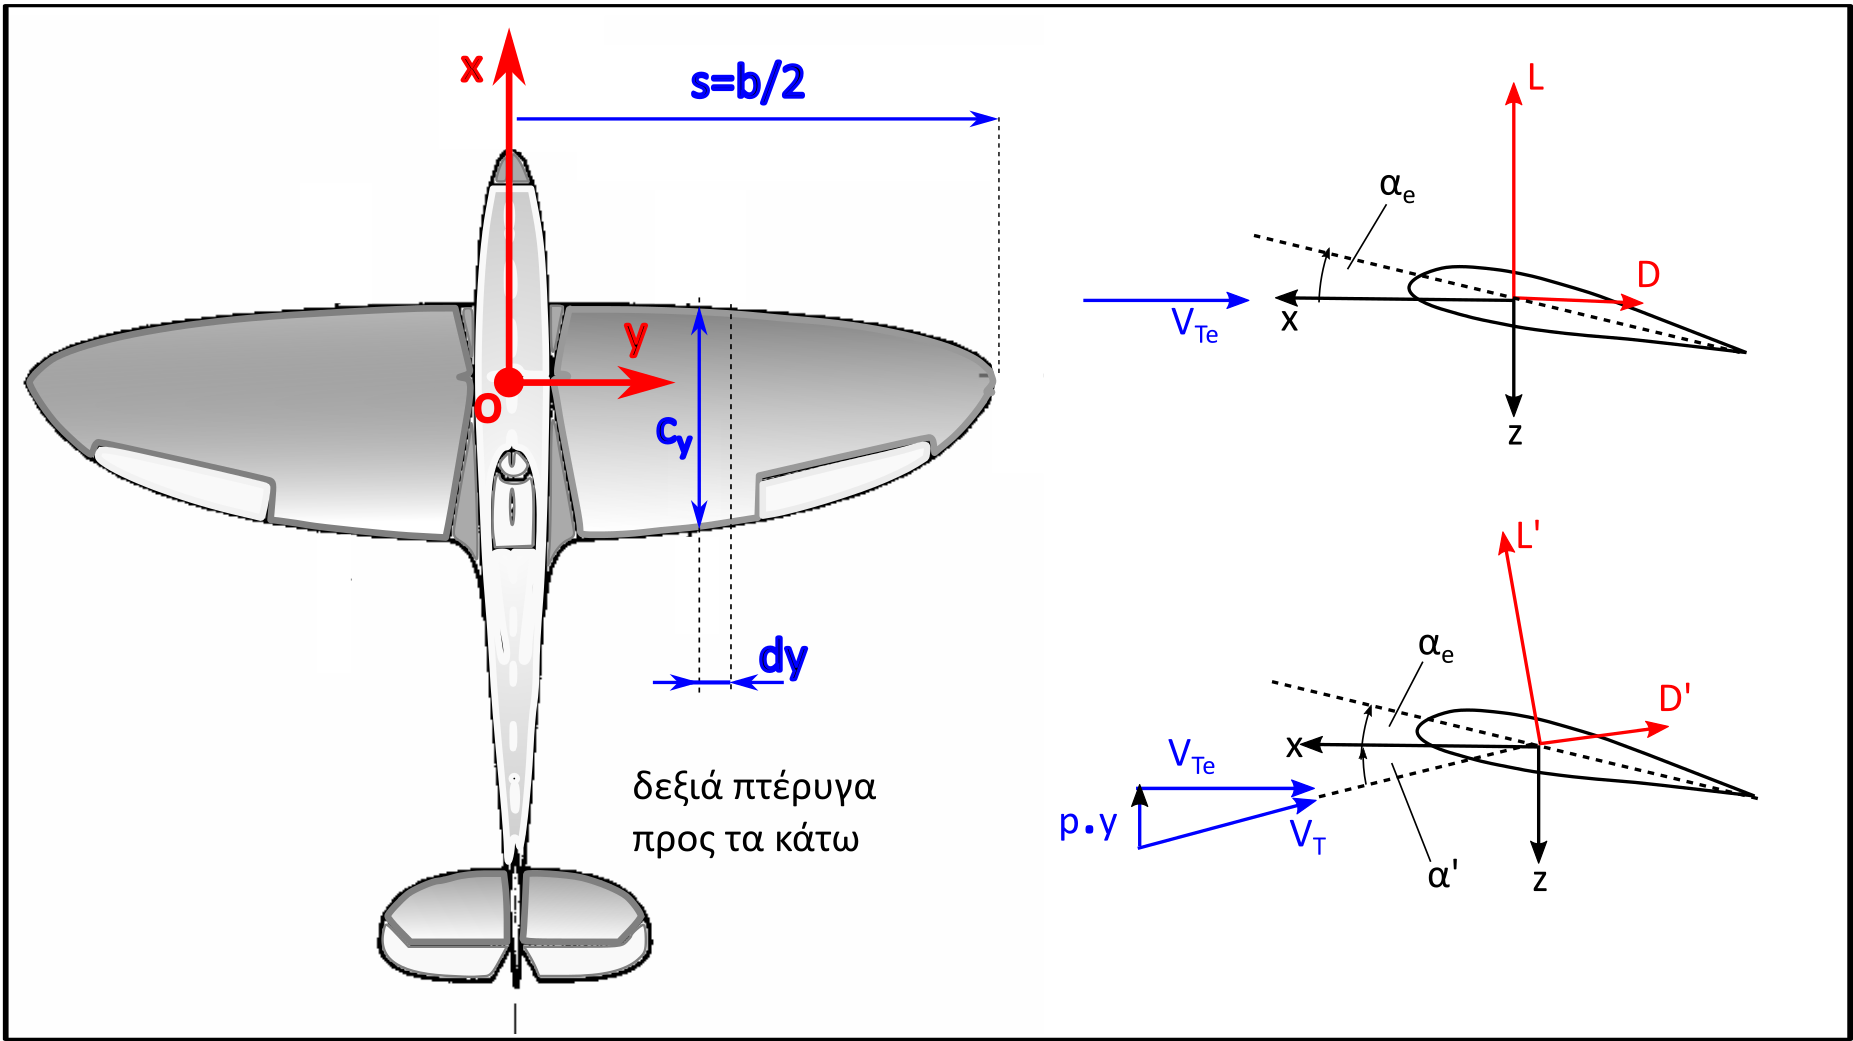 Η εικόνα δεν εμφανίζεται/Image is not displayed - Γεωμετρία και λωρίδες υπολογισμού άνωσης στην κύρια πτέρυγα λόγω διαταραχής του ρυθμού περιστροφής / q disturbance, wing lift, strip theory